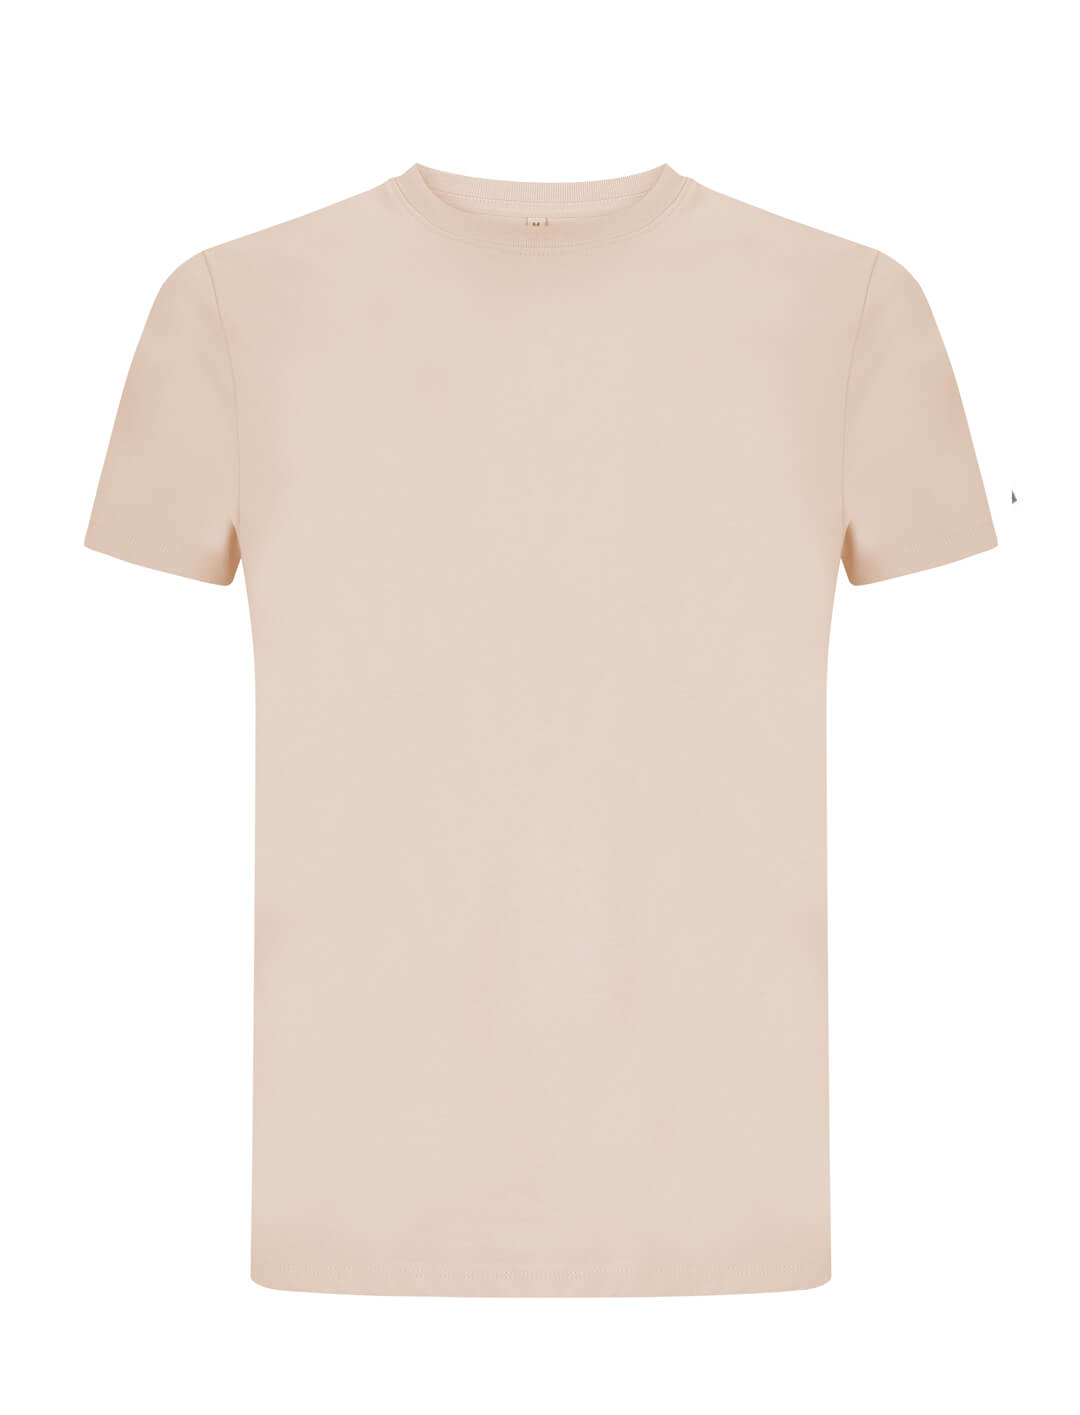 Jasnoróżowy ekologiczny t-shirt unisex z własnym nadrukiem firmowym Continental Jersey t-shirt EP18